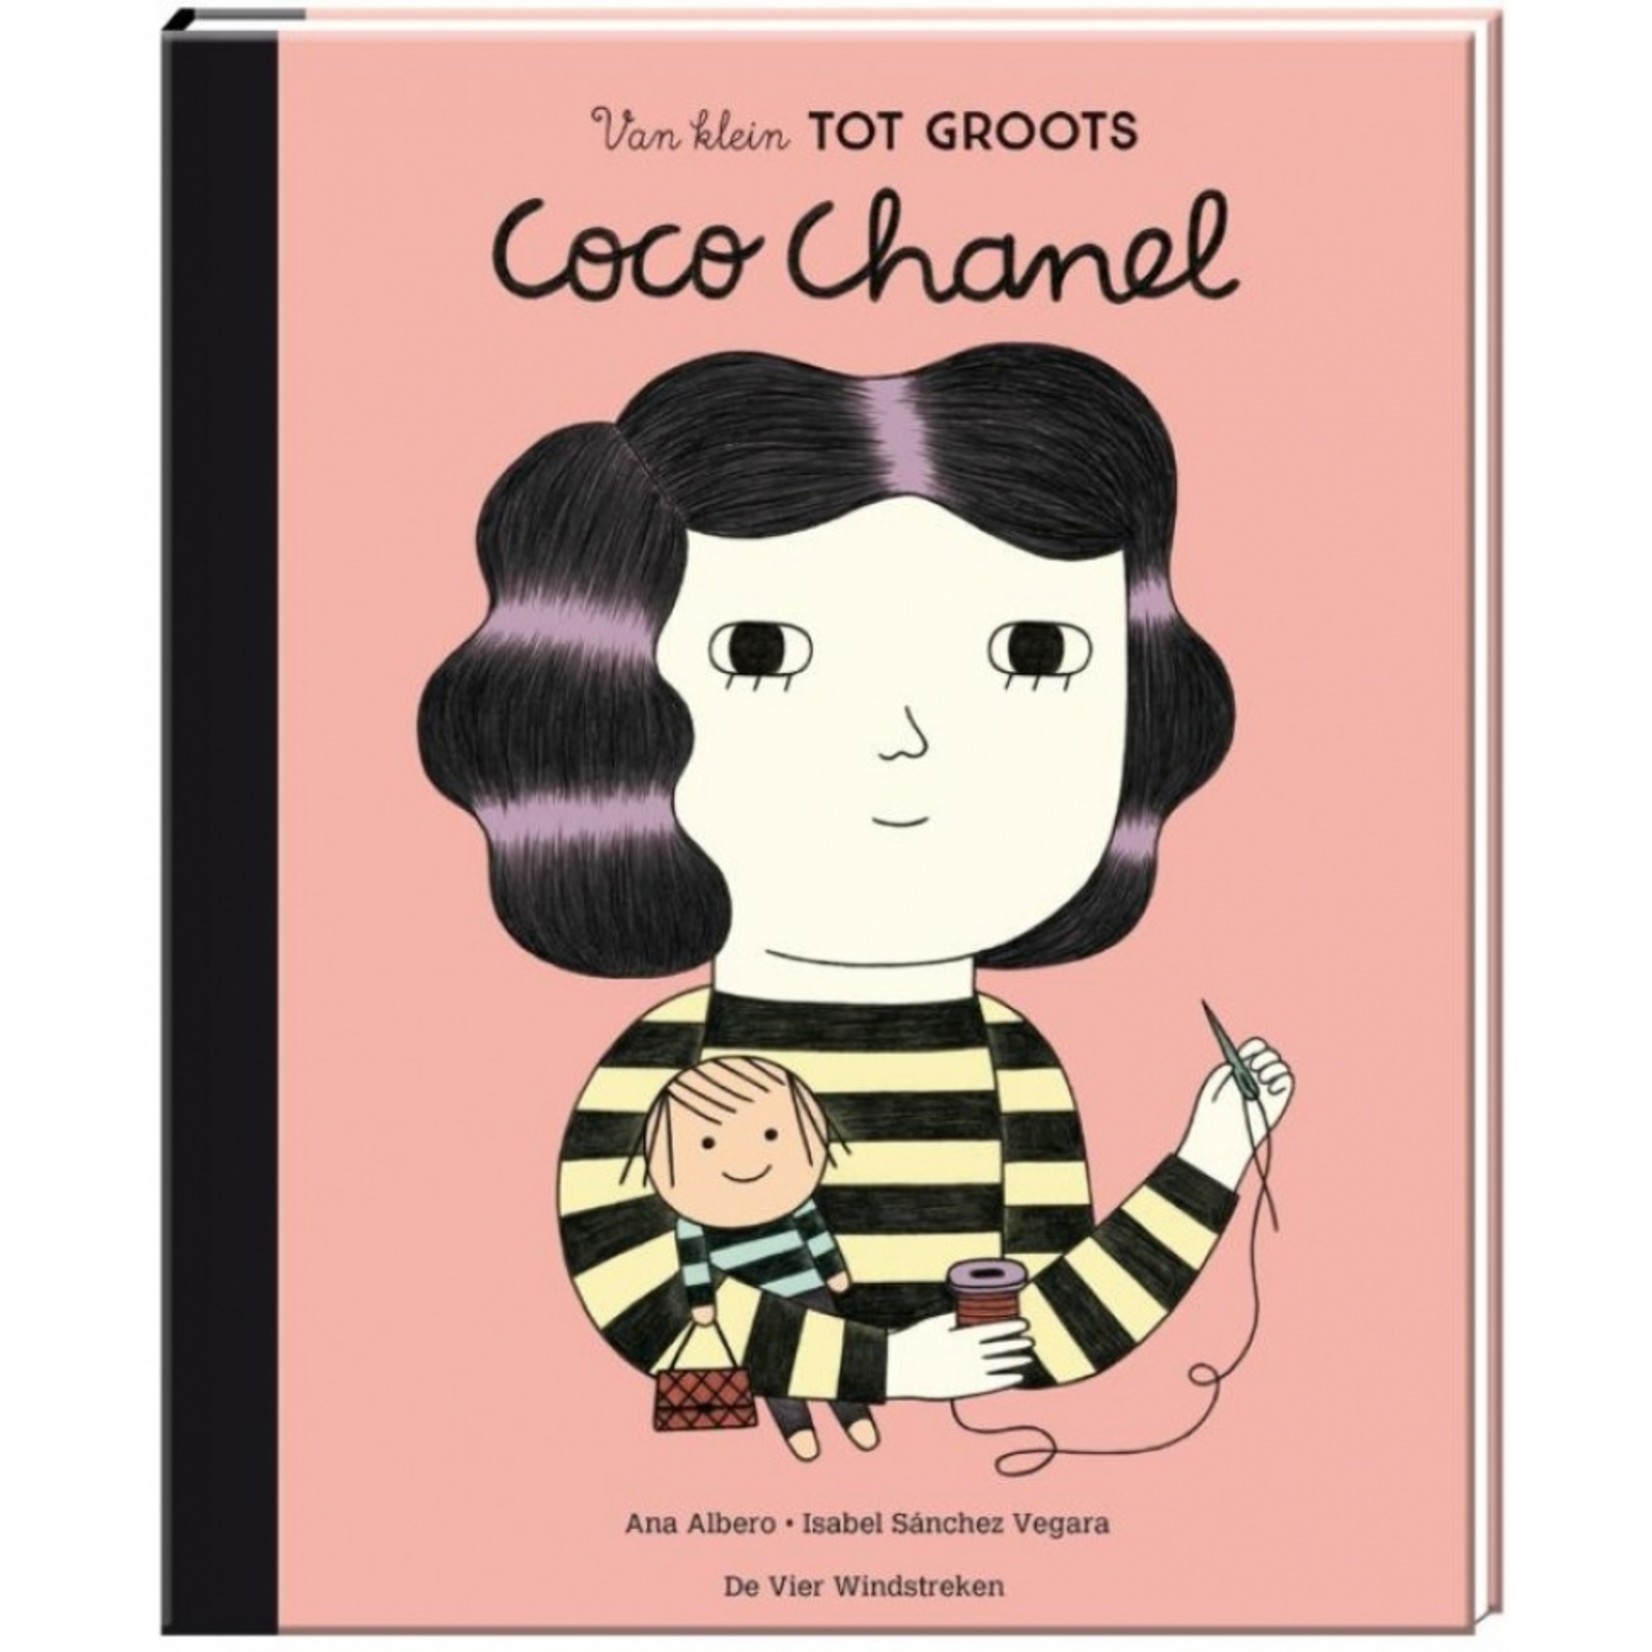 Boek - Van klein tot groots - Coco Chanel